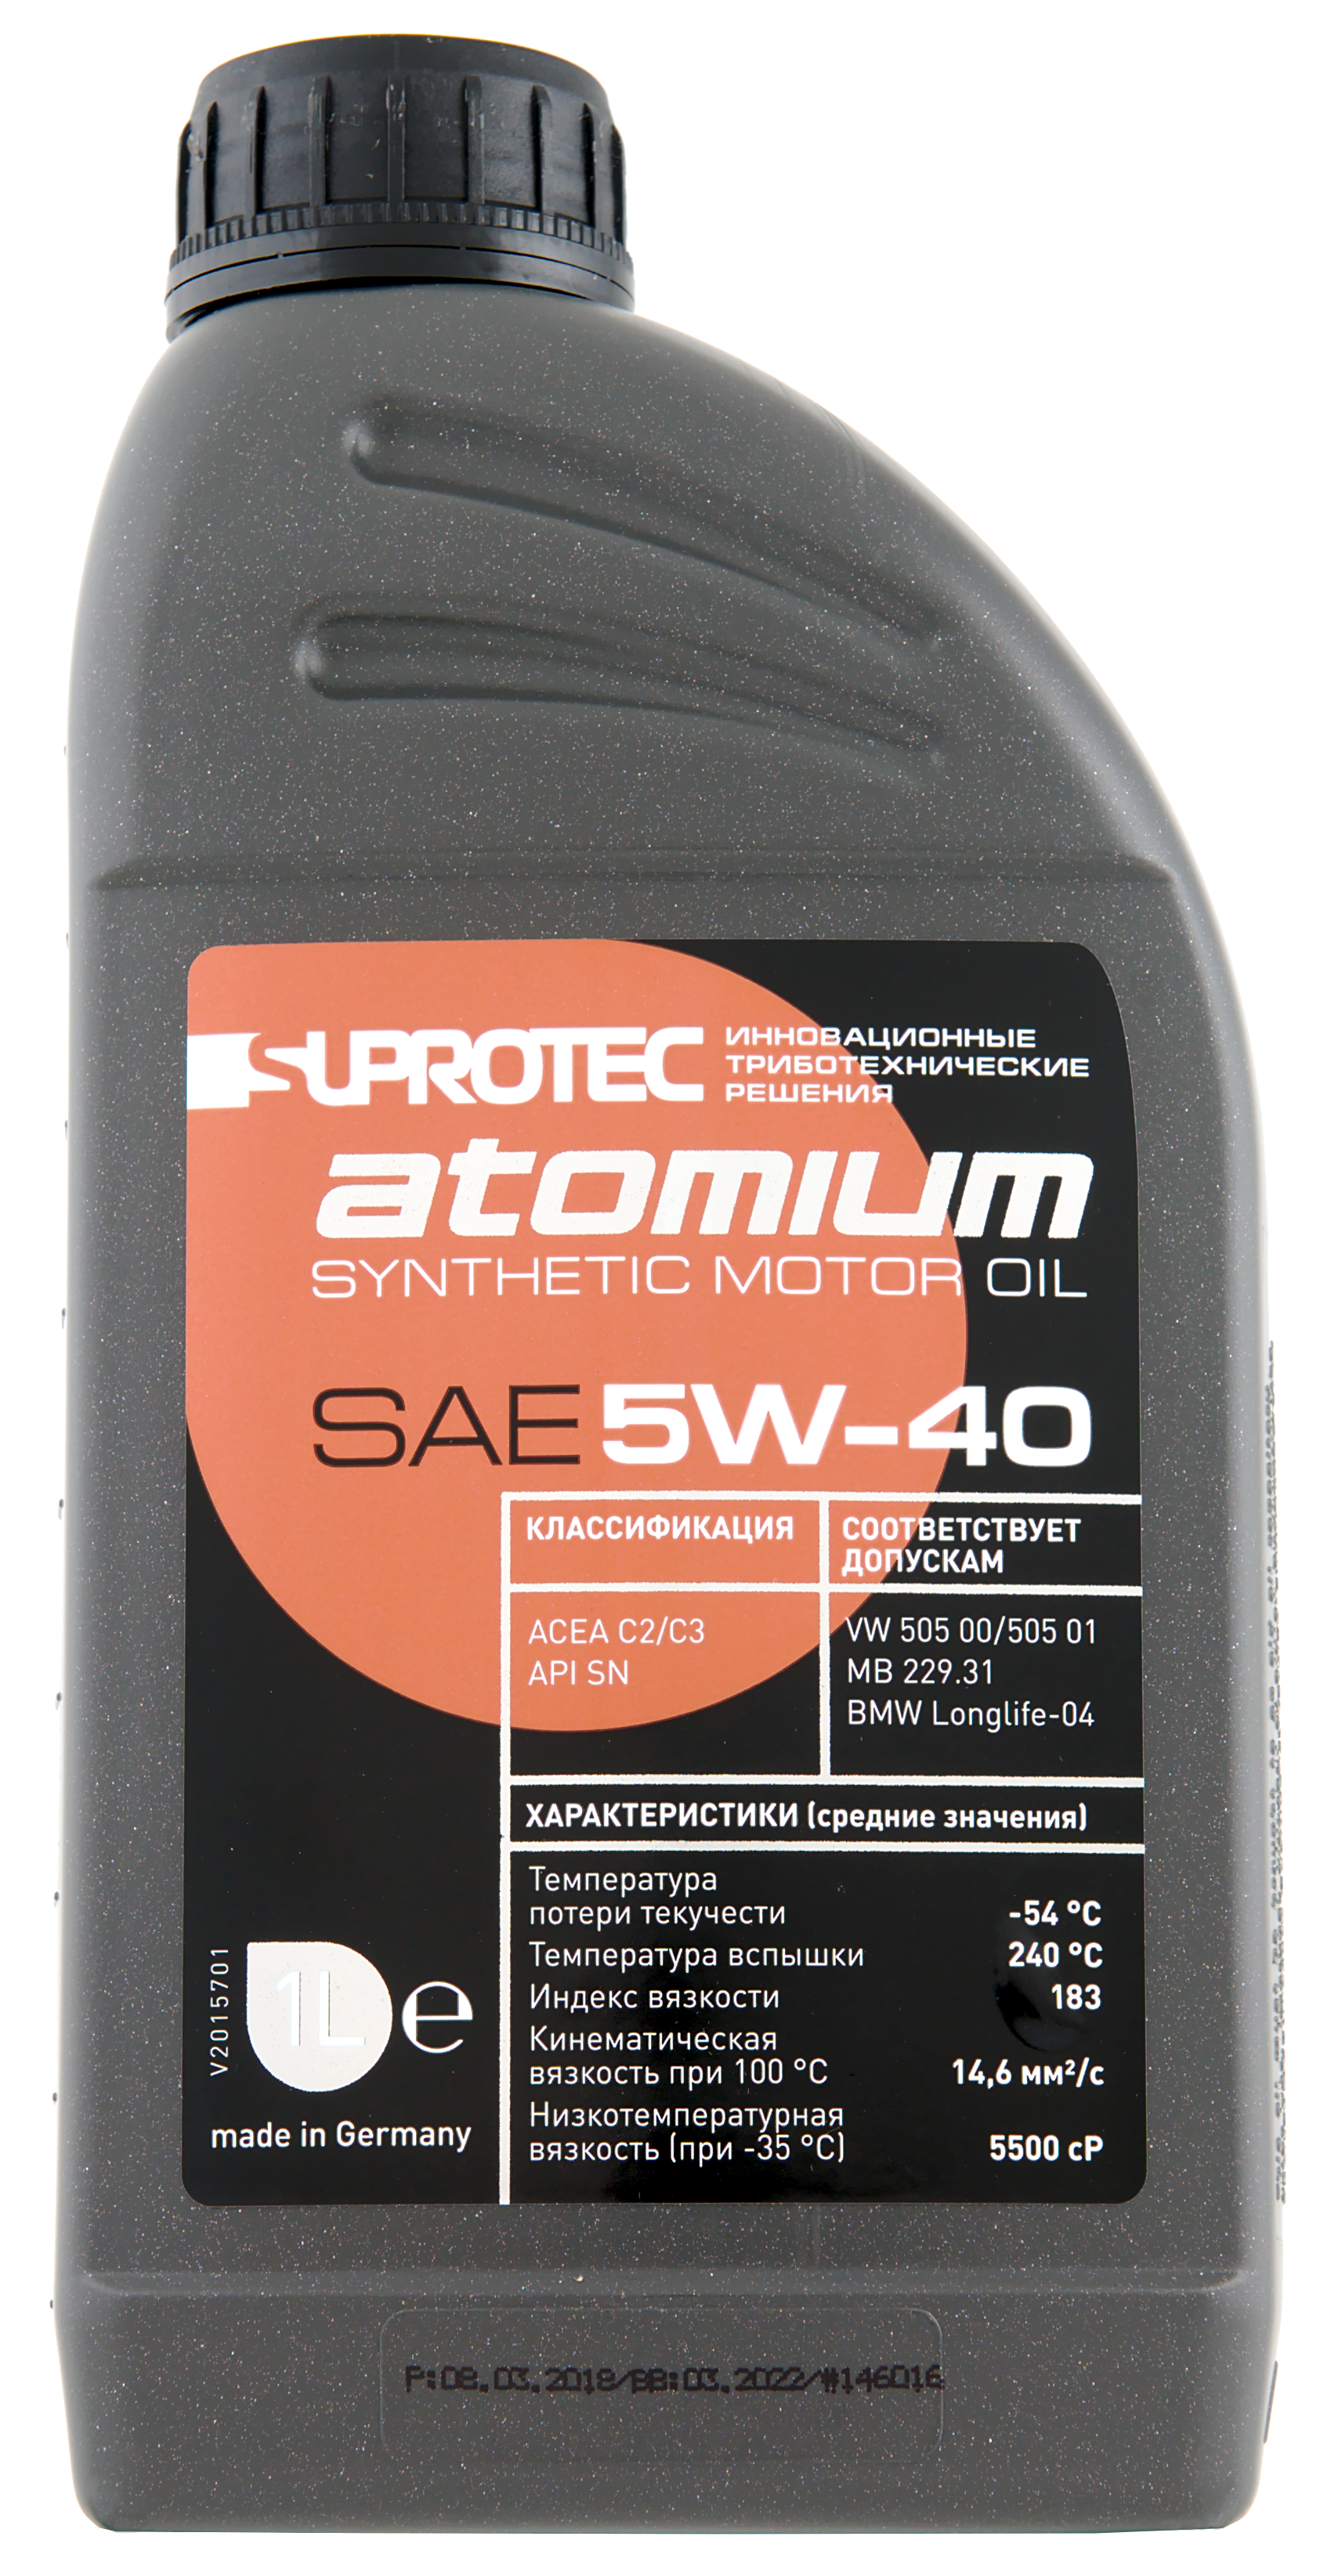 Suprotec Atomium 5w-40. Моторное масло suprotec Atomium 5w-40. Suprotec 5w30 Atomium. Супротек Атомиум 5/40. Масло супротек 5w40